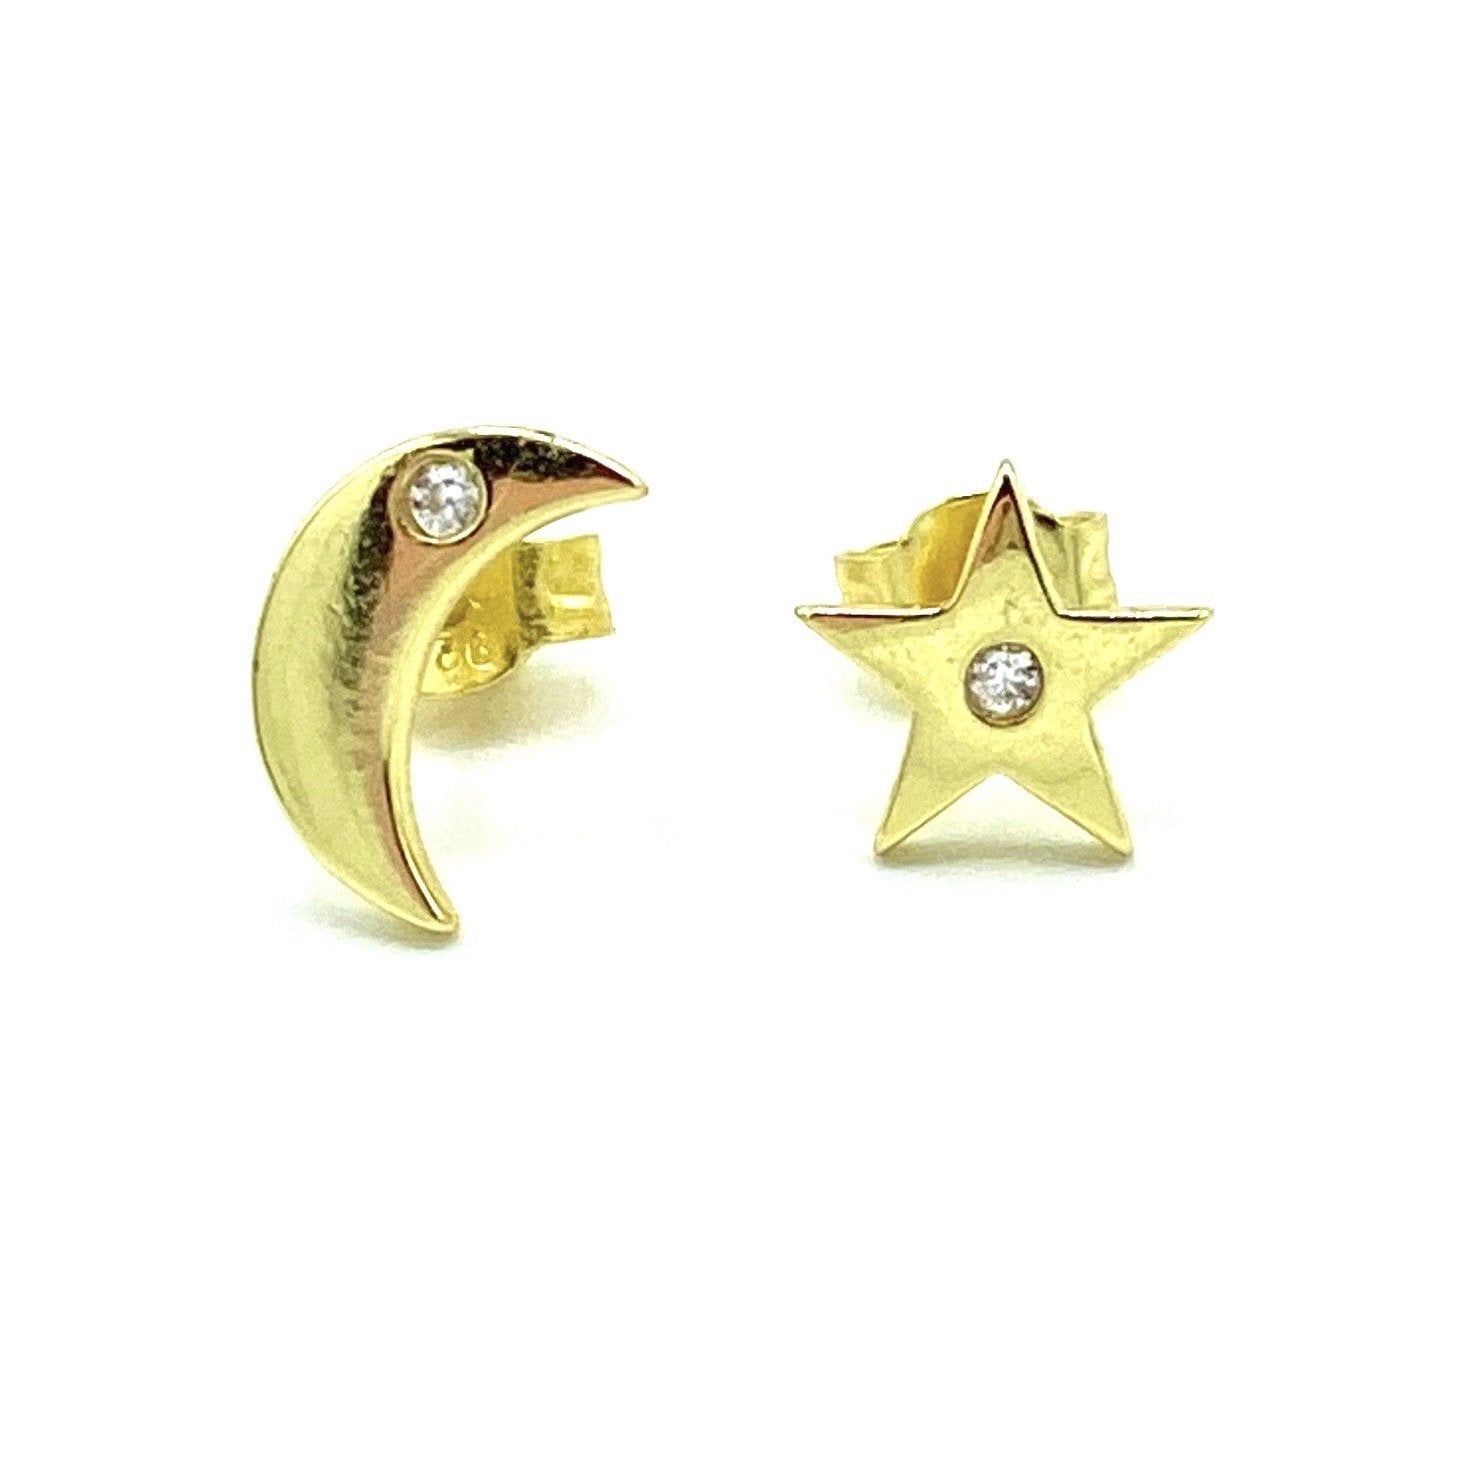 MOON £ STAR Studs earrings